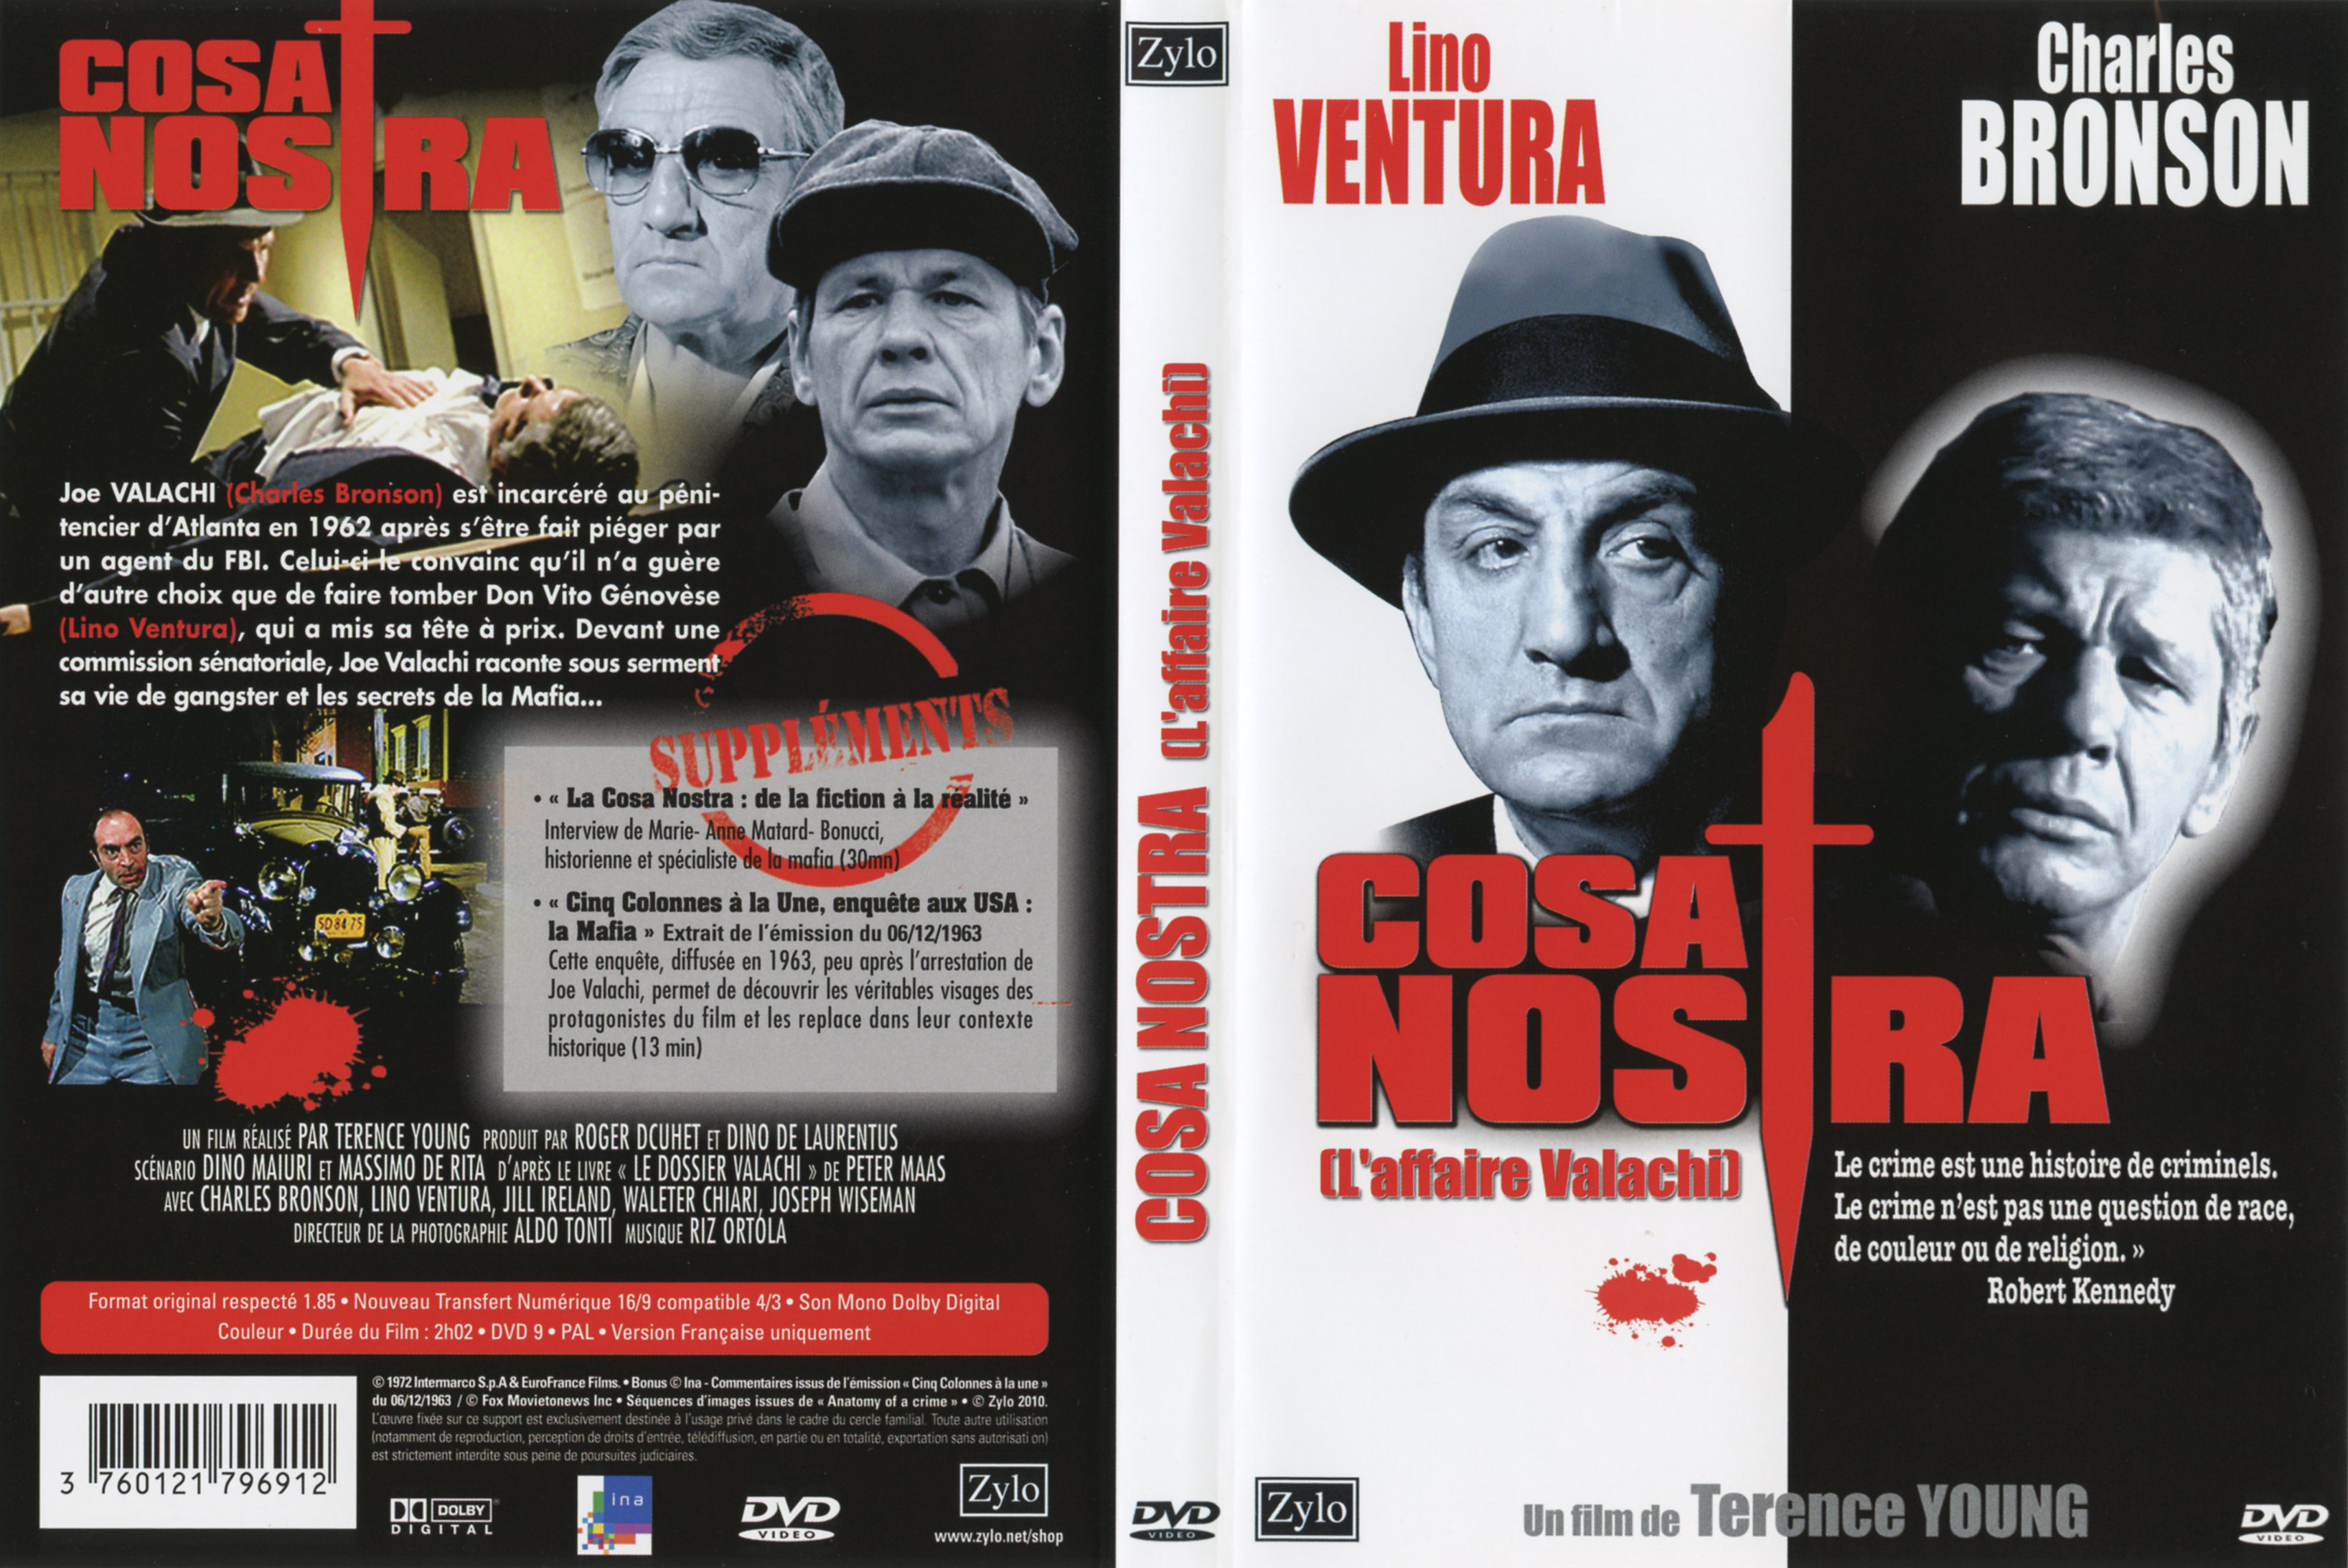 Jaquette DVD Cosa Nostra v2